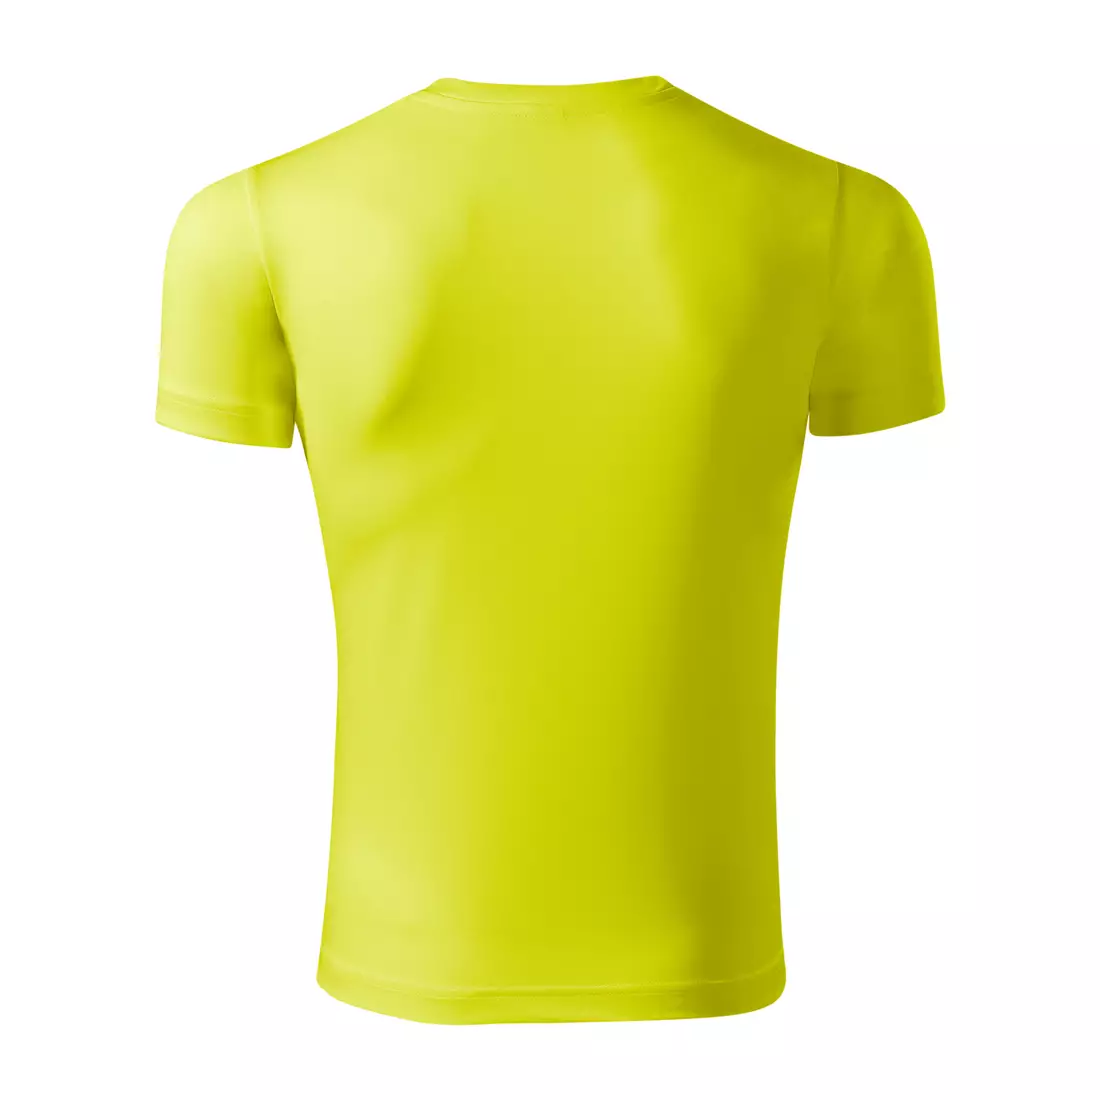 PICCOLIO PIXEL Koszulka sportowa, T-shirt, krótki rękaw, męska, neon żółty 100 % poliester P819012